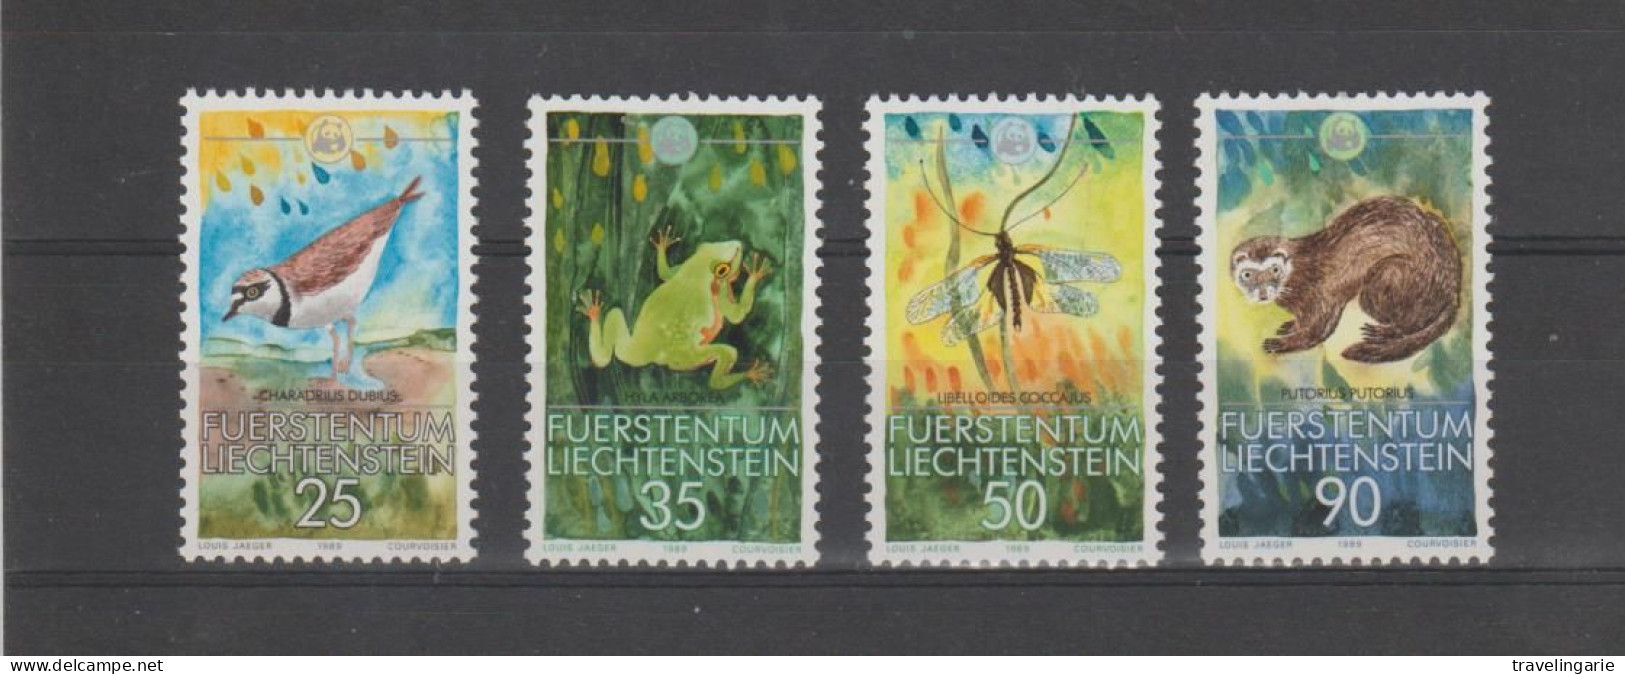 Liechtenstein 1989 WWF Nature Protection ** MNH - Unused Stamps